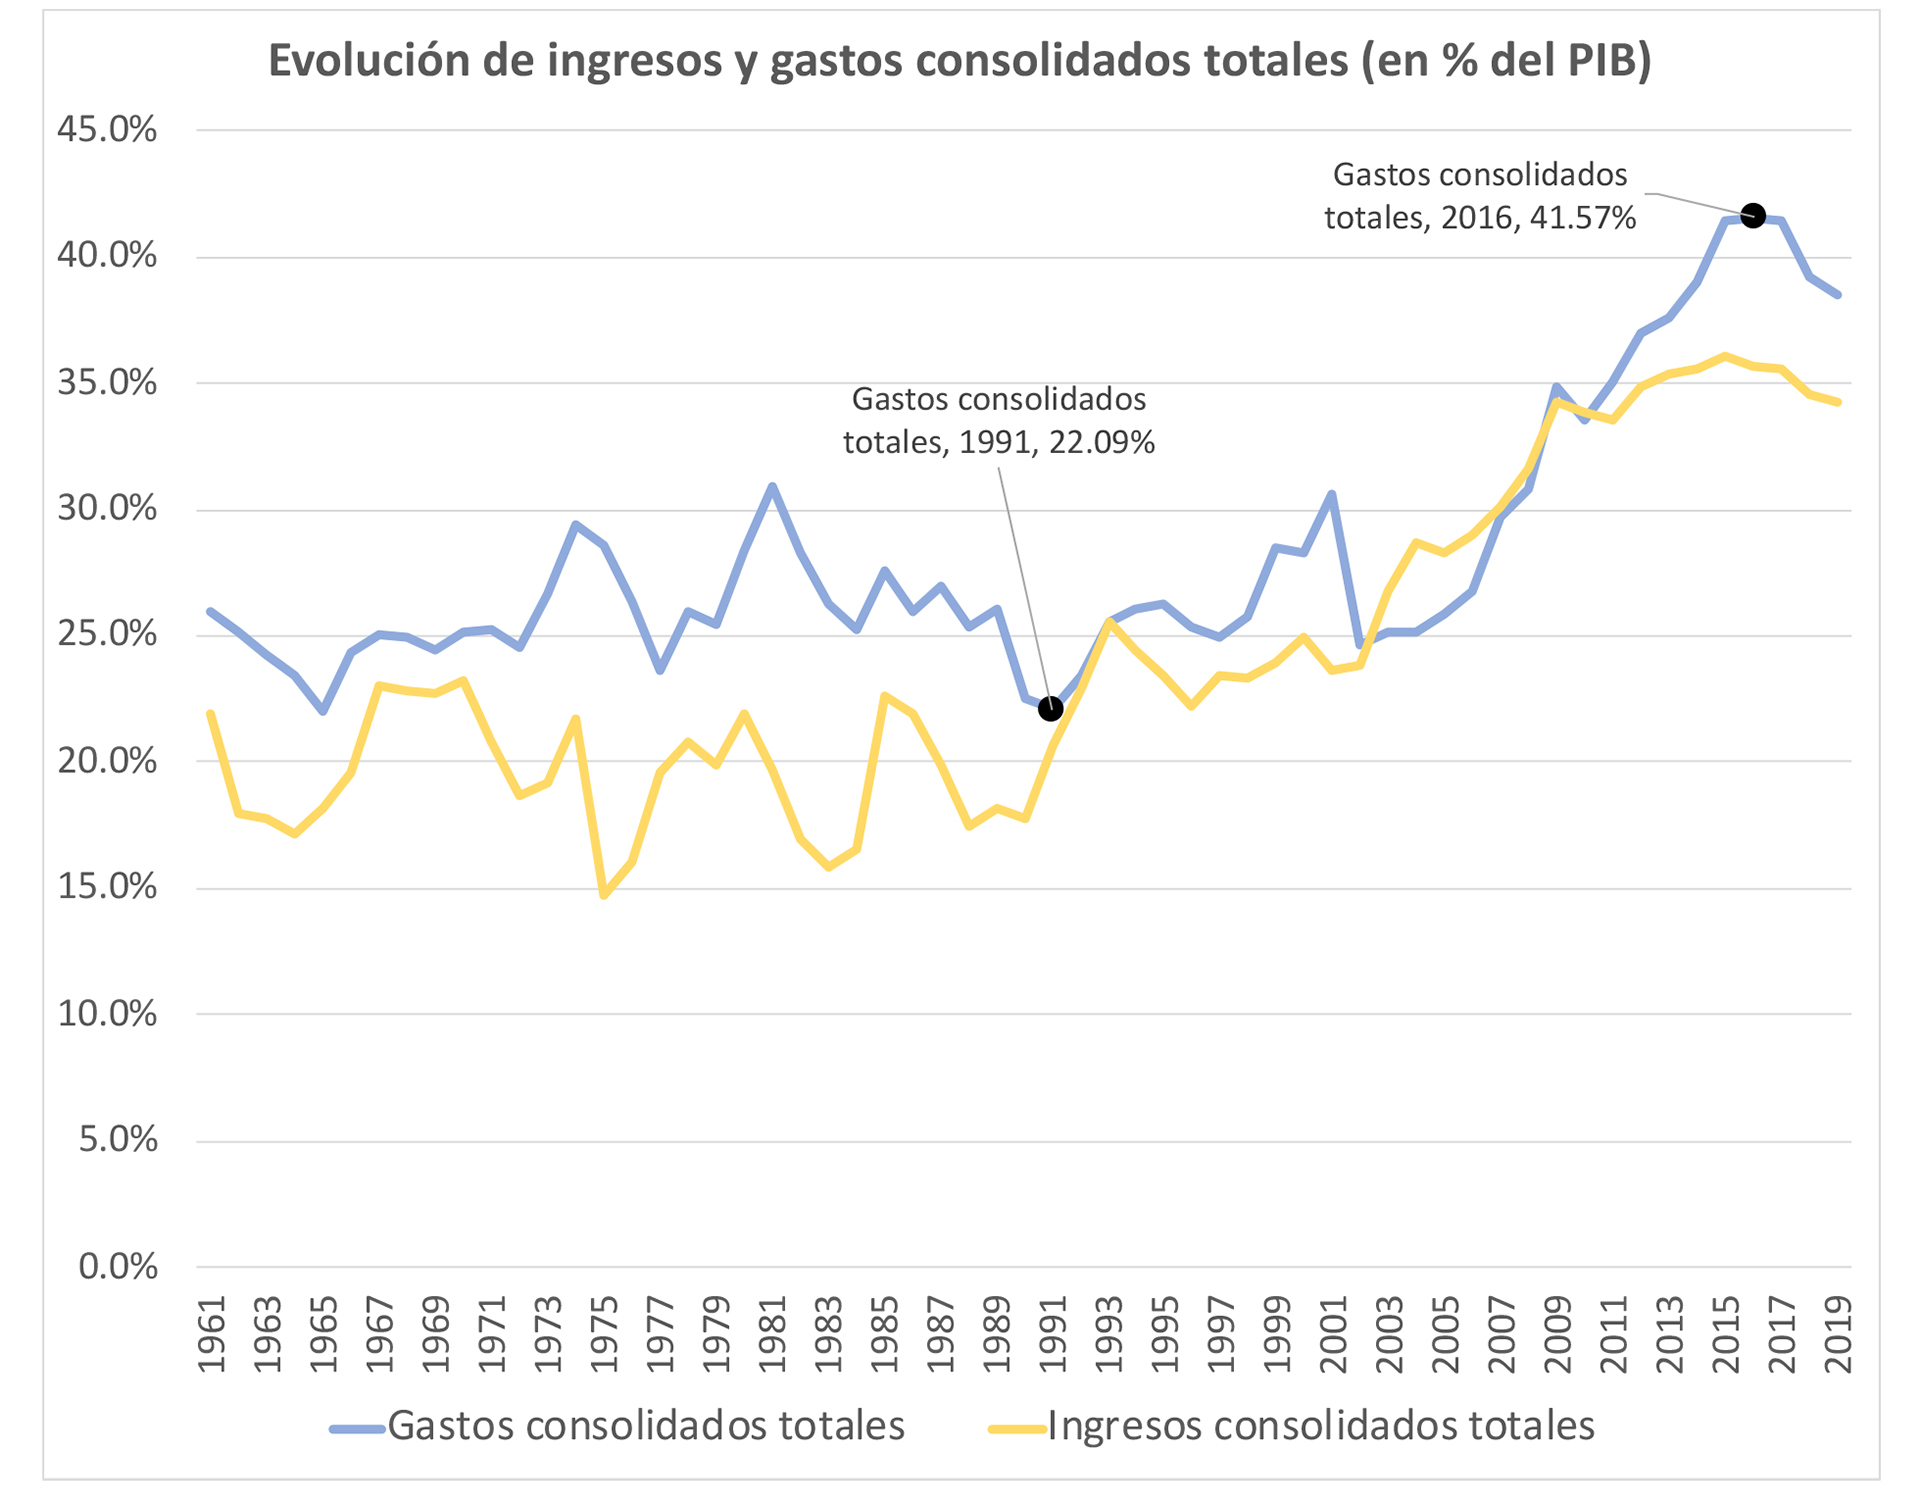 Fuente: Ejes estructurales del problema fiscal argentino en el marco de la pandemia por COVID-19